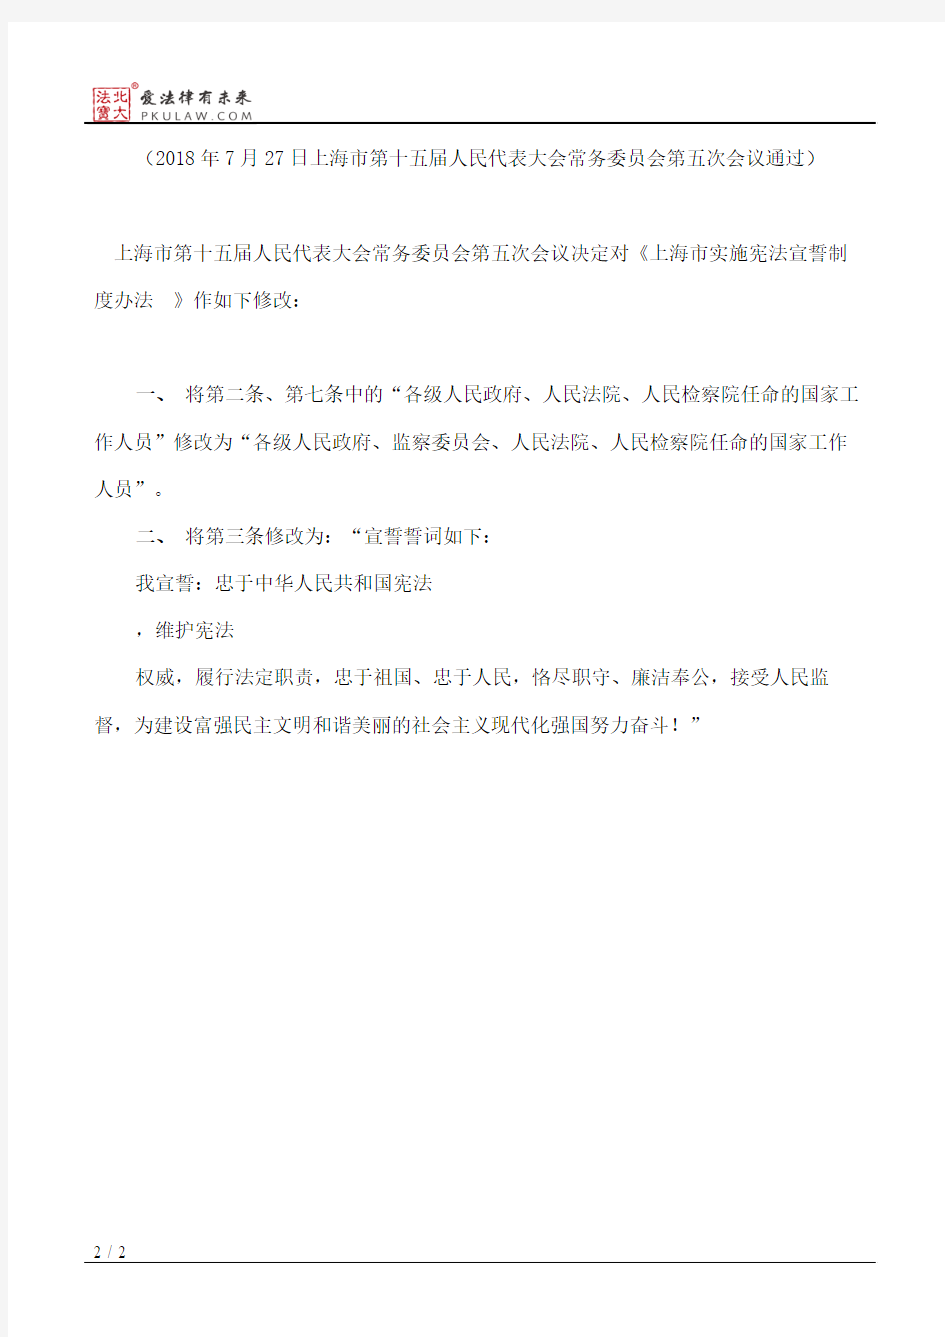 上海市人大常委会关于修改《上海市实施宪法宣誓制度办法》的决定(2018)